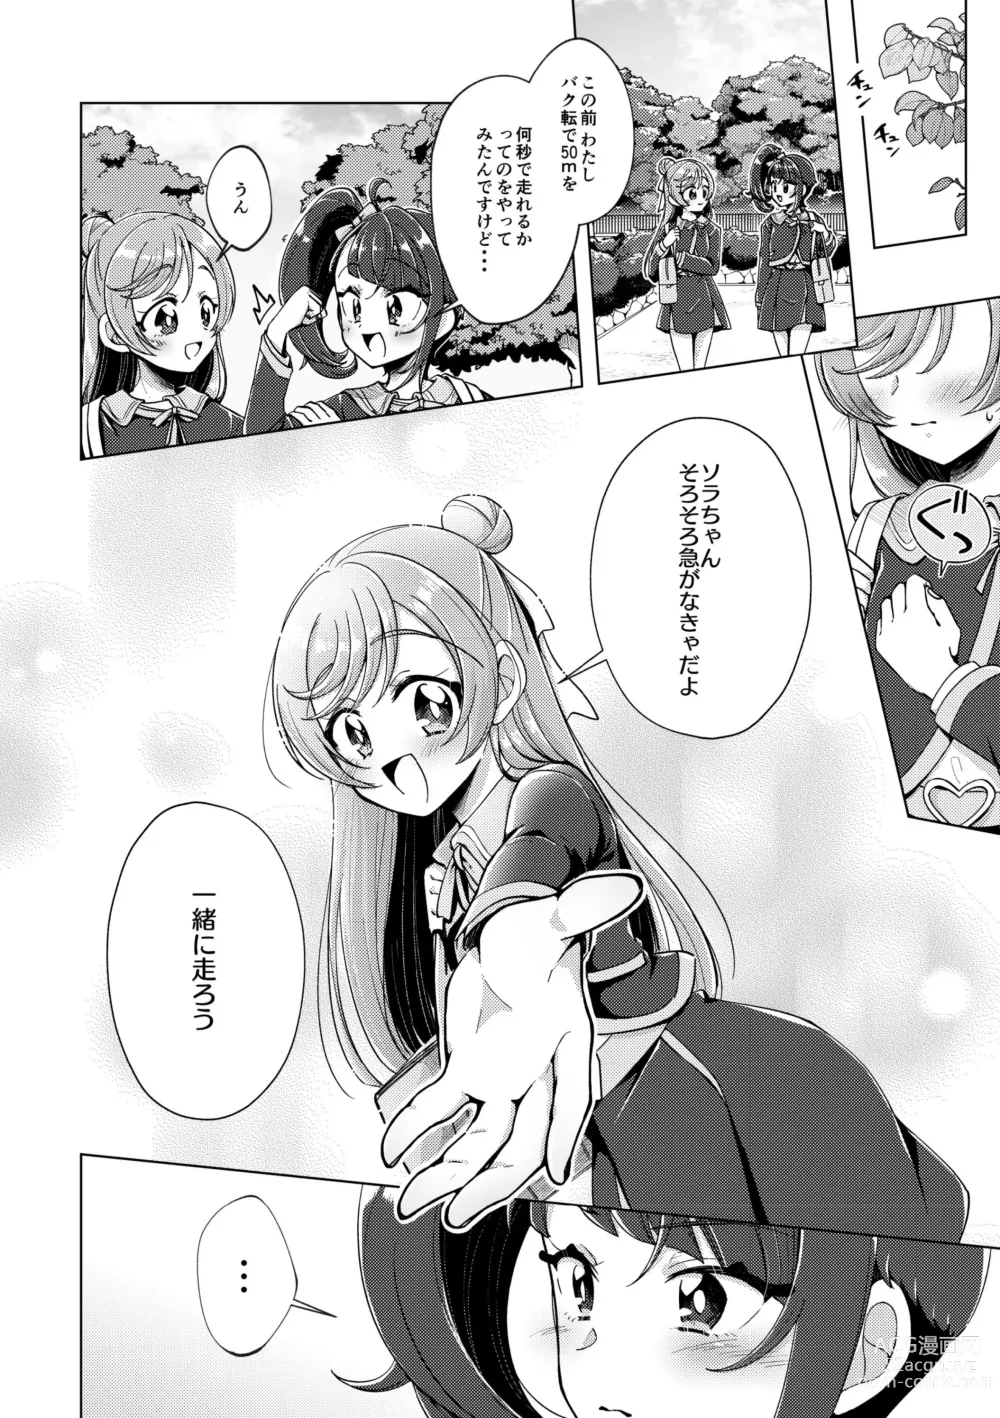 Page 13 of doujinshi Zankou no Sora